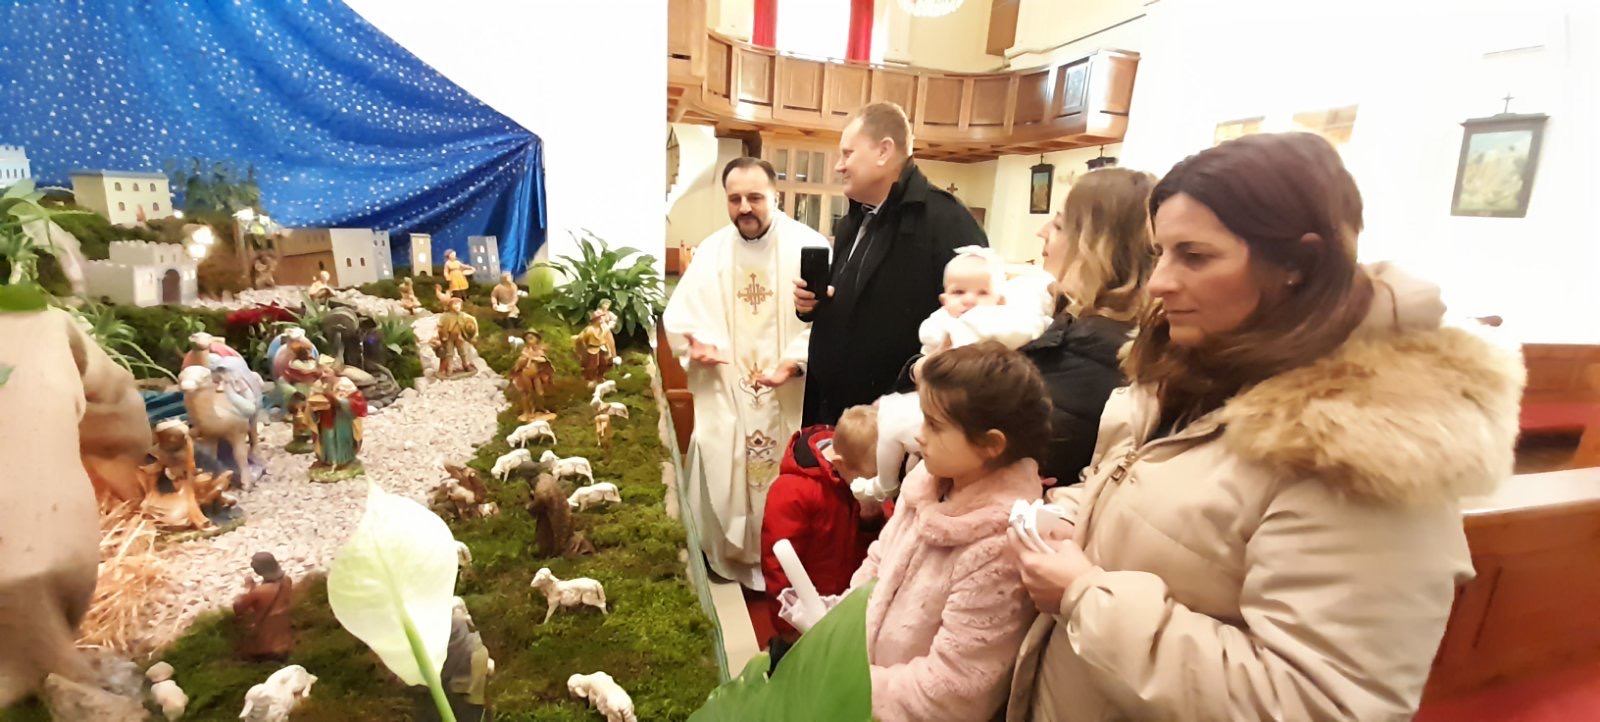 08. siječnja 2022. - Krštenje Tija Nimac 